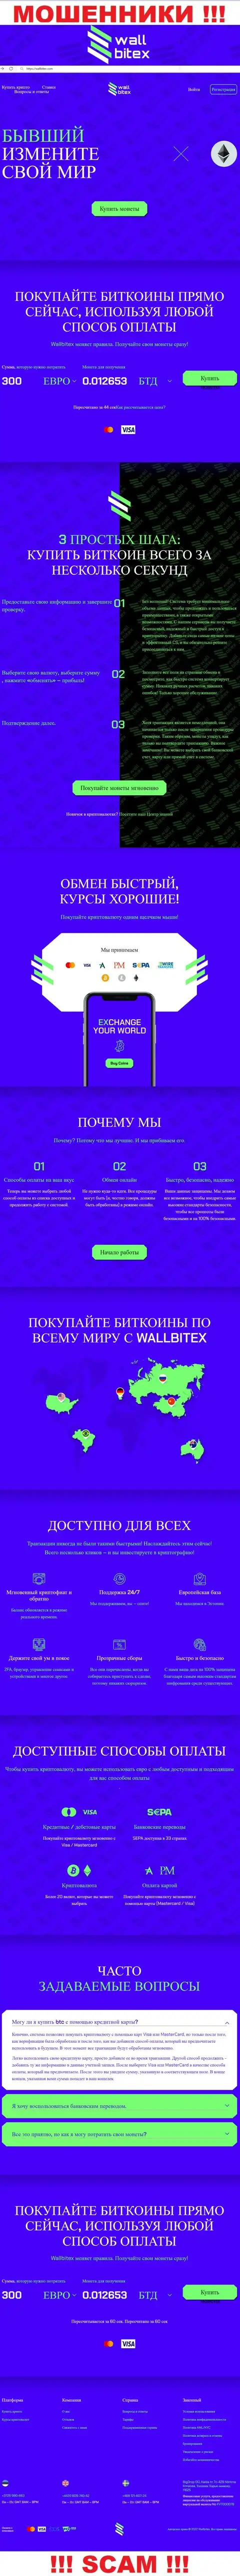 ВаллБитекс Ком - это официальный сервис мошеннической организации WallBitex